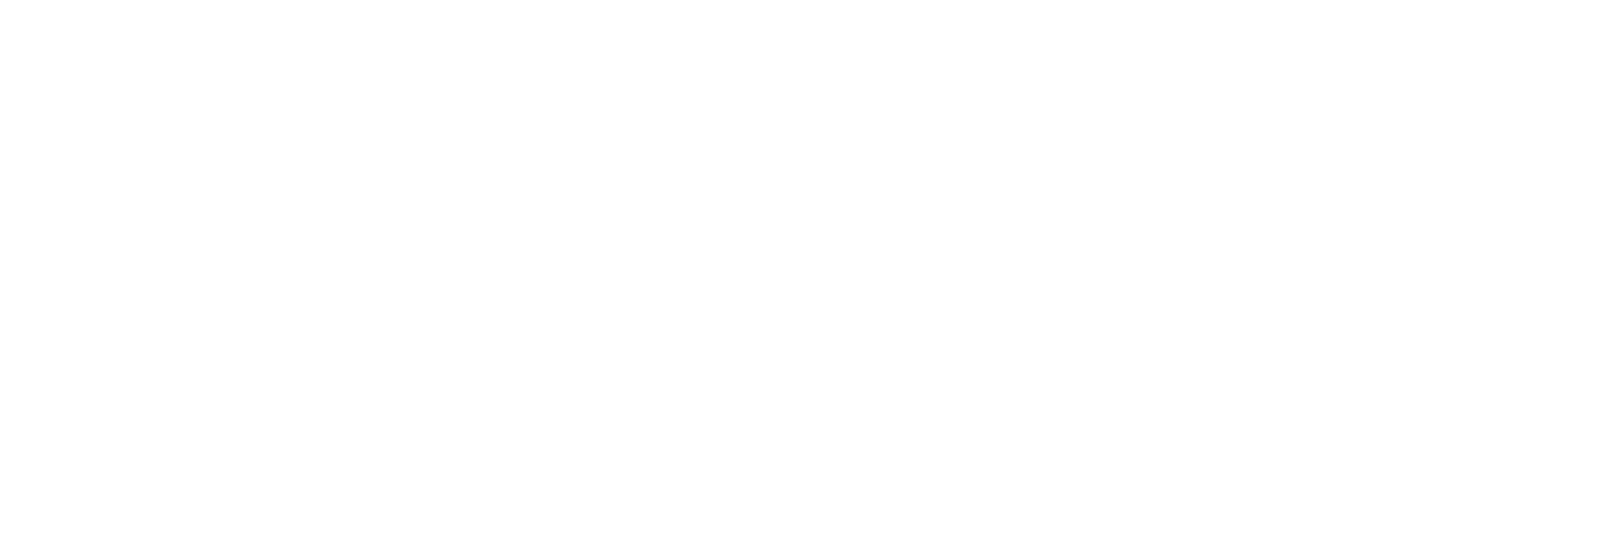 Kellogg's logo grand pour les fonds sombres (PNG transparent)